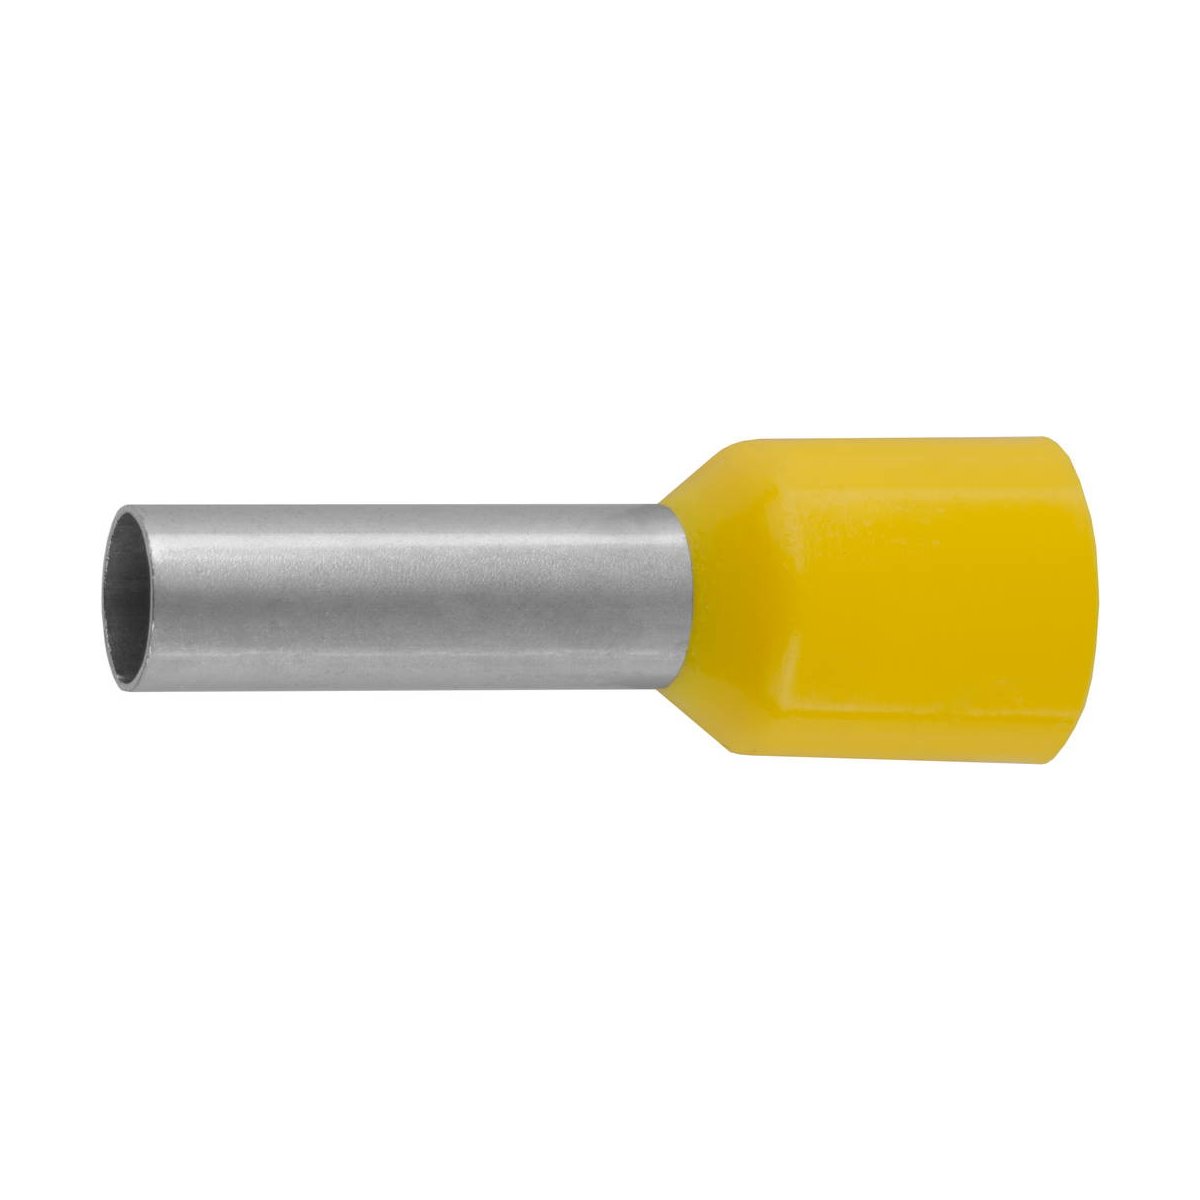 СВЕТОЗАР 6 мм, желтый, 10 шт., наконечник штыревой 49400-60